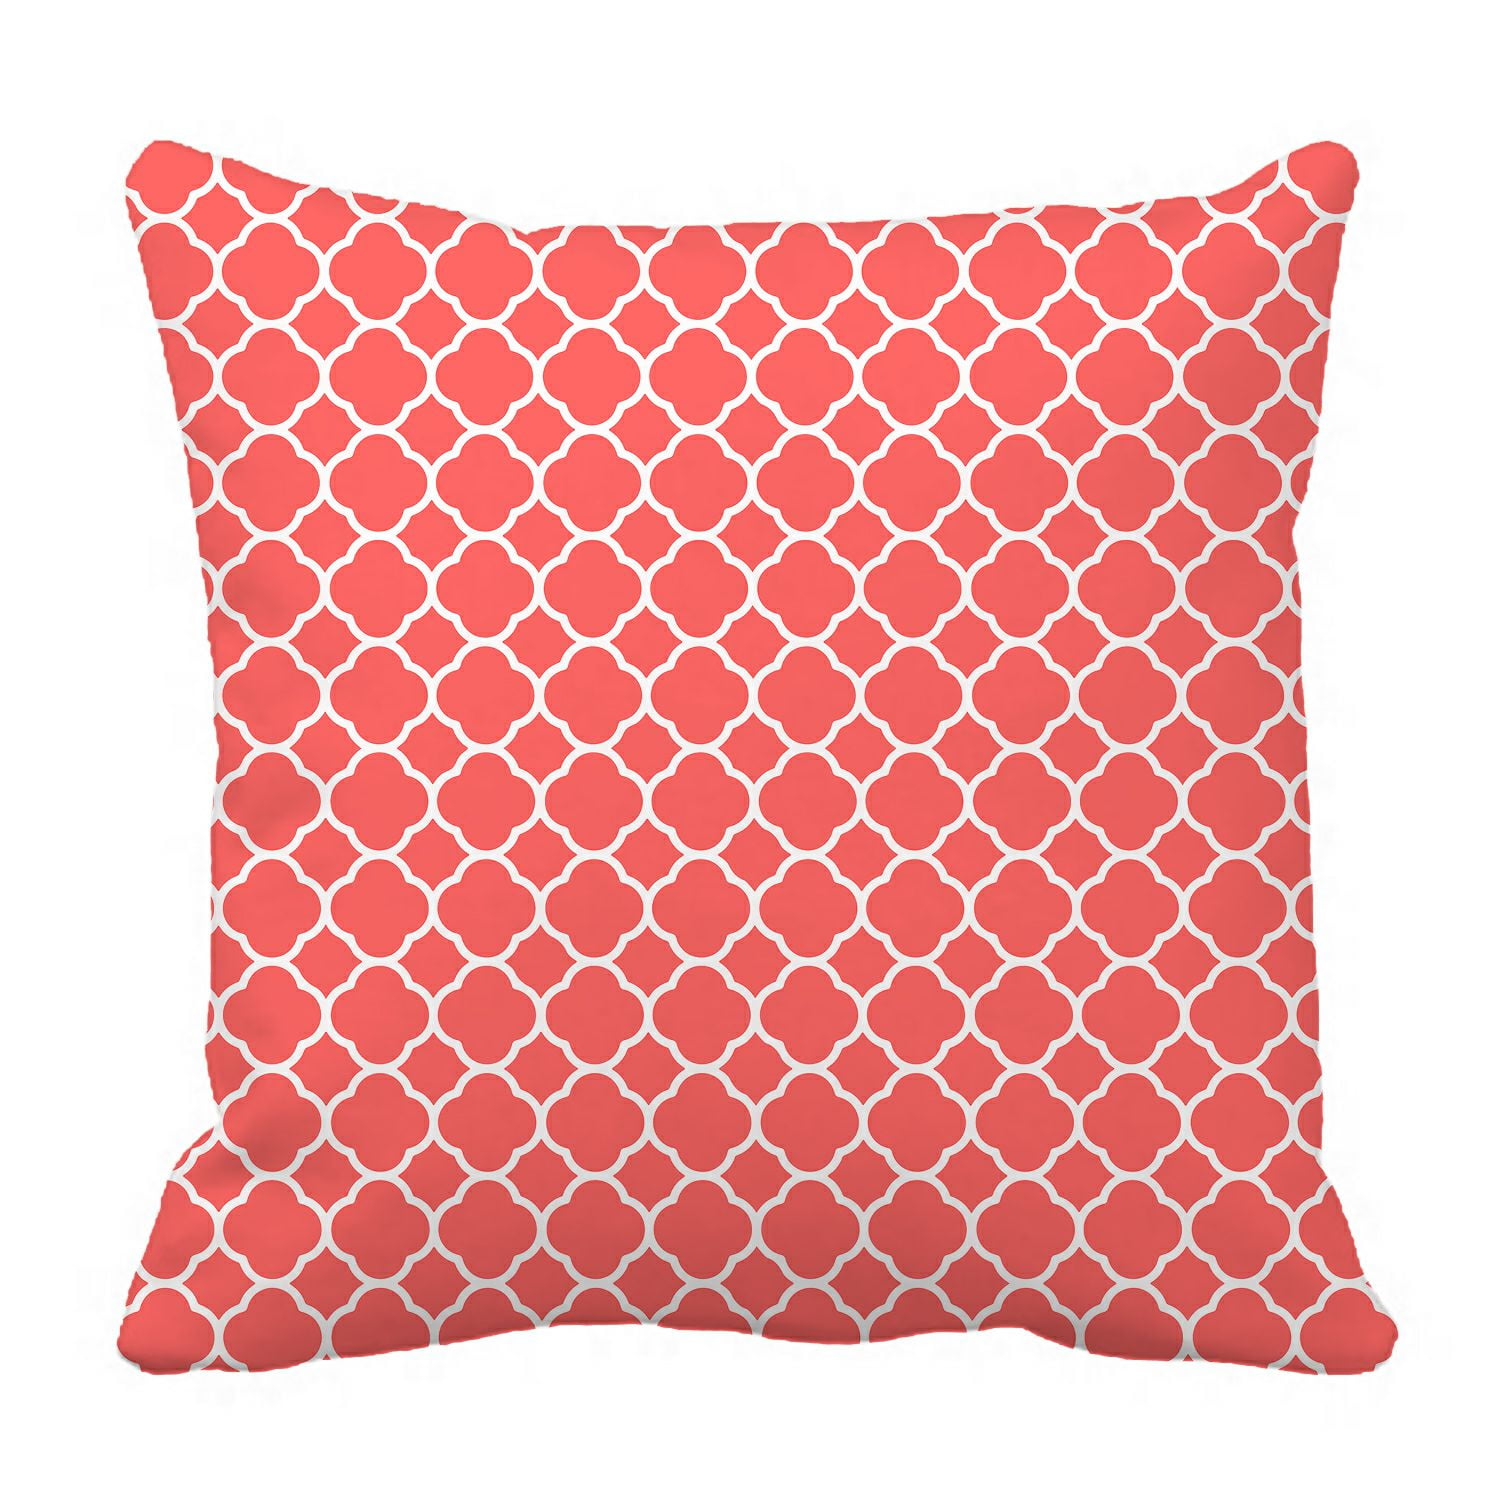 ZKGK Quatrefoil Pattern Pillowcase Home Decor Pillow Cover ...